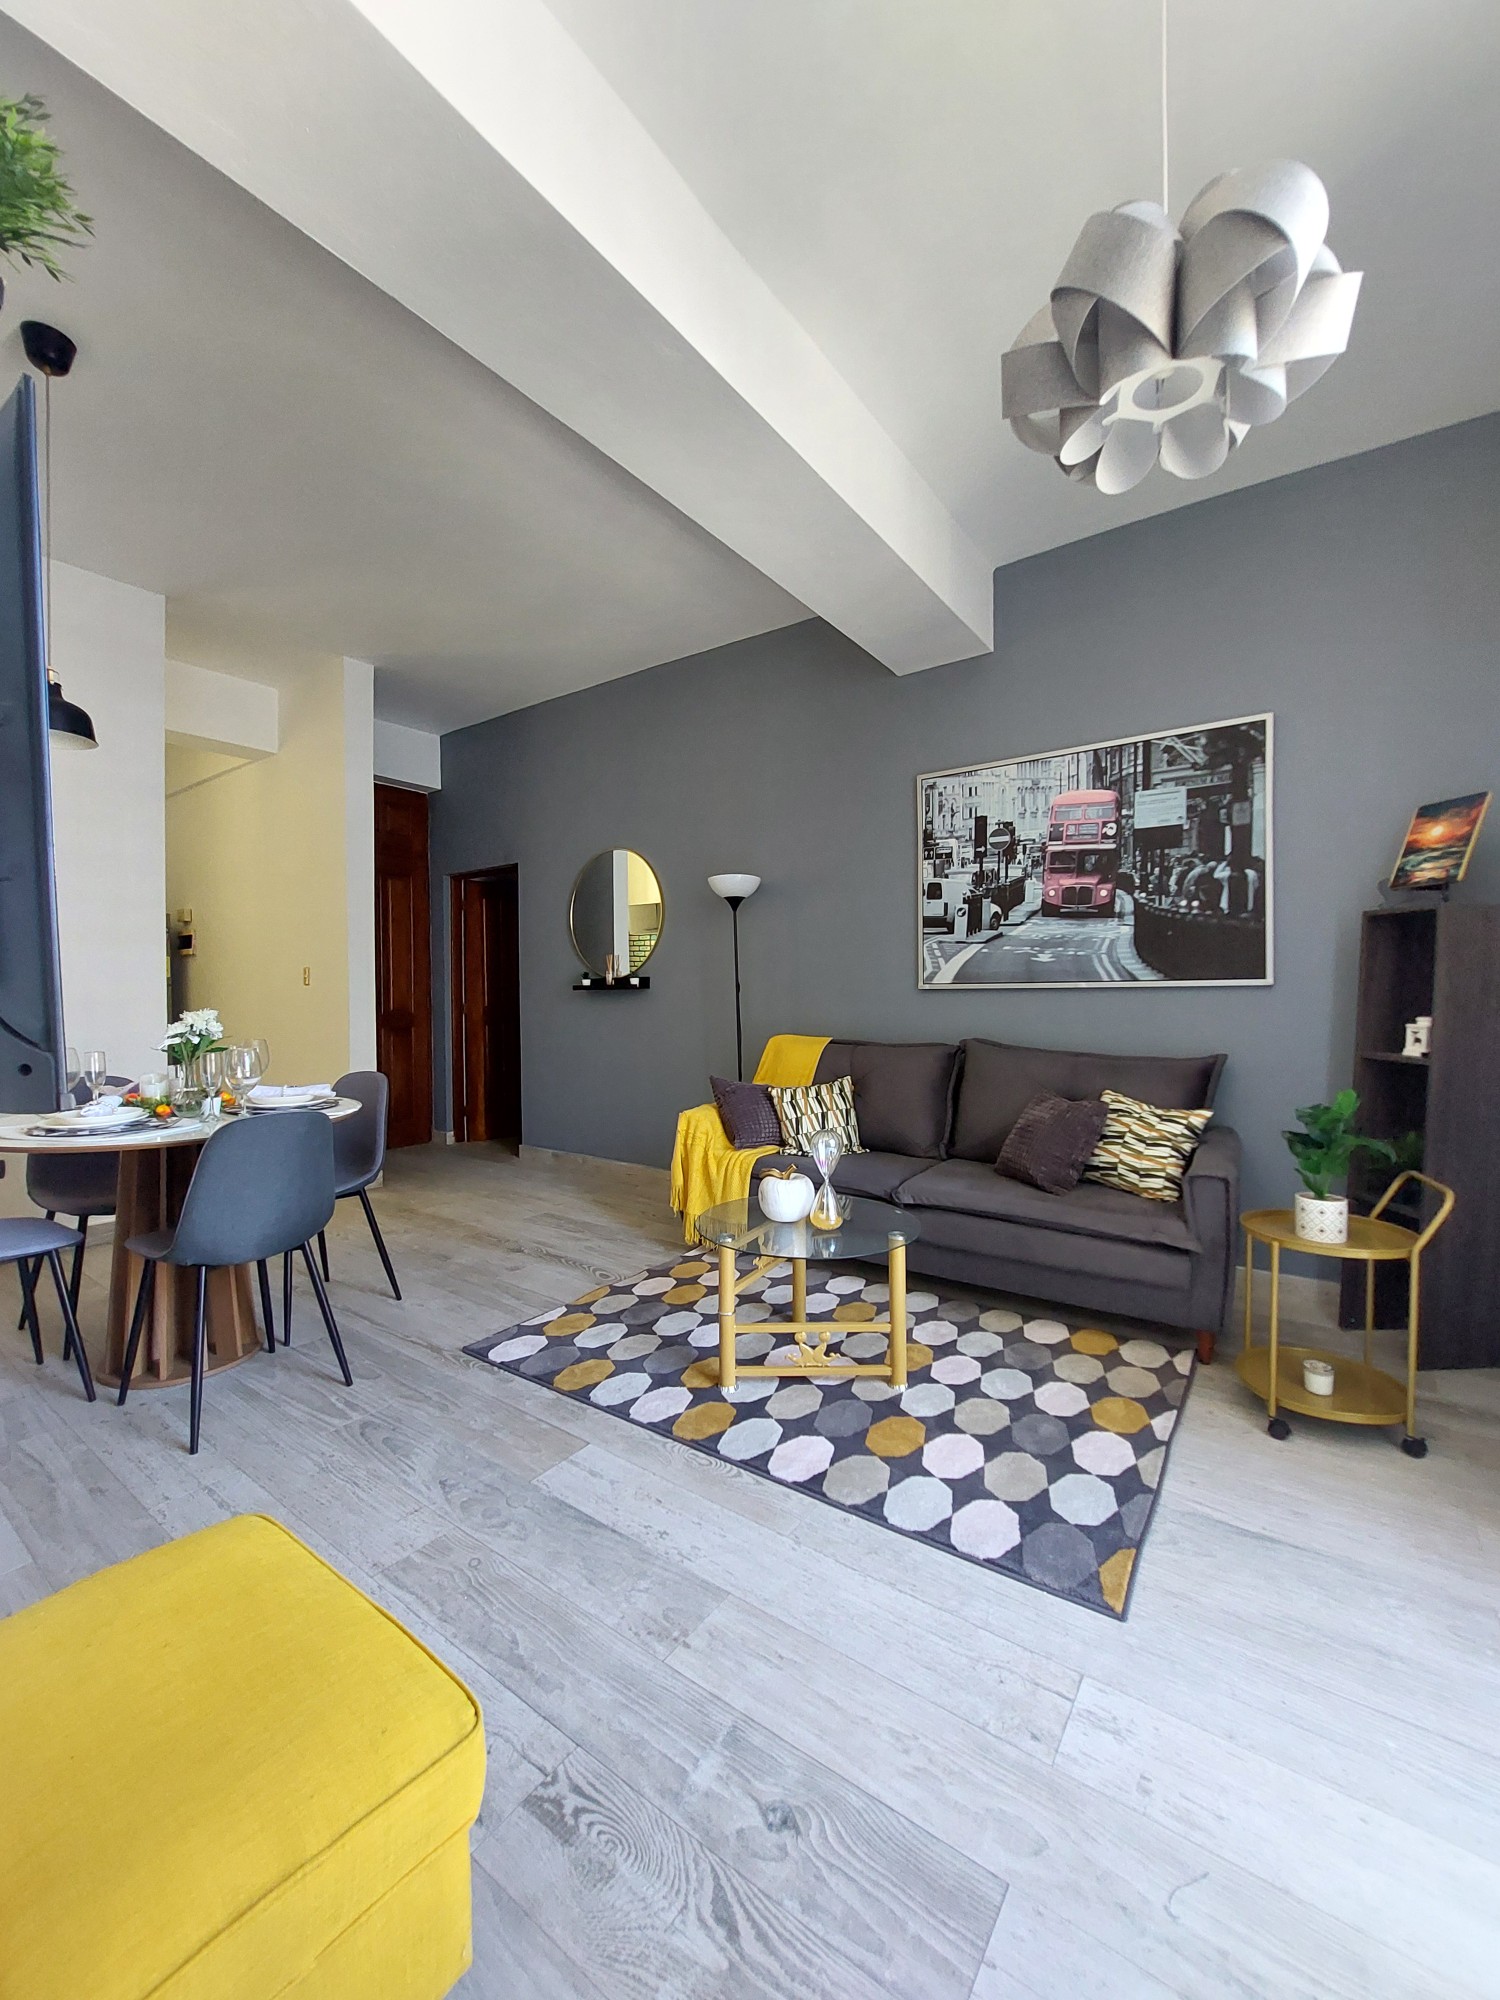 apartamentos - Apartamento amueblado de 1 habitación en piso alto bien ubicado en Piantini 2